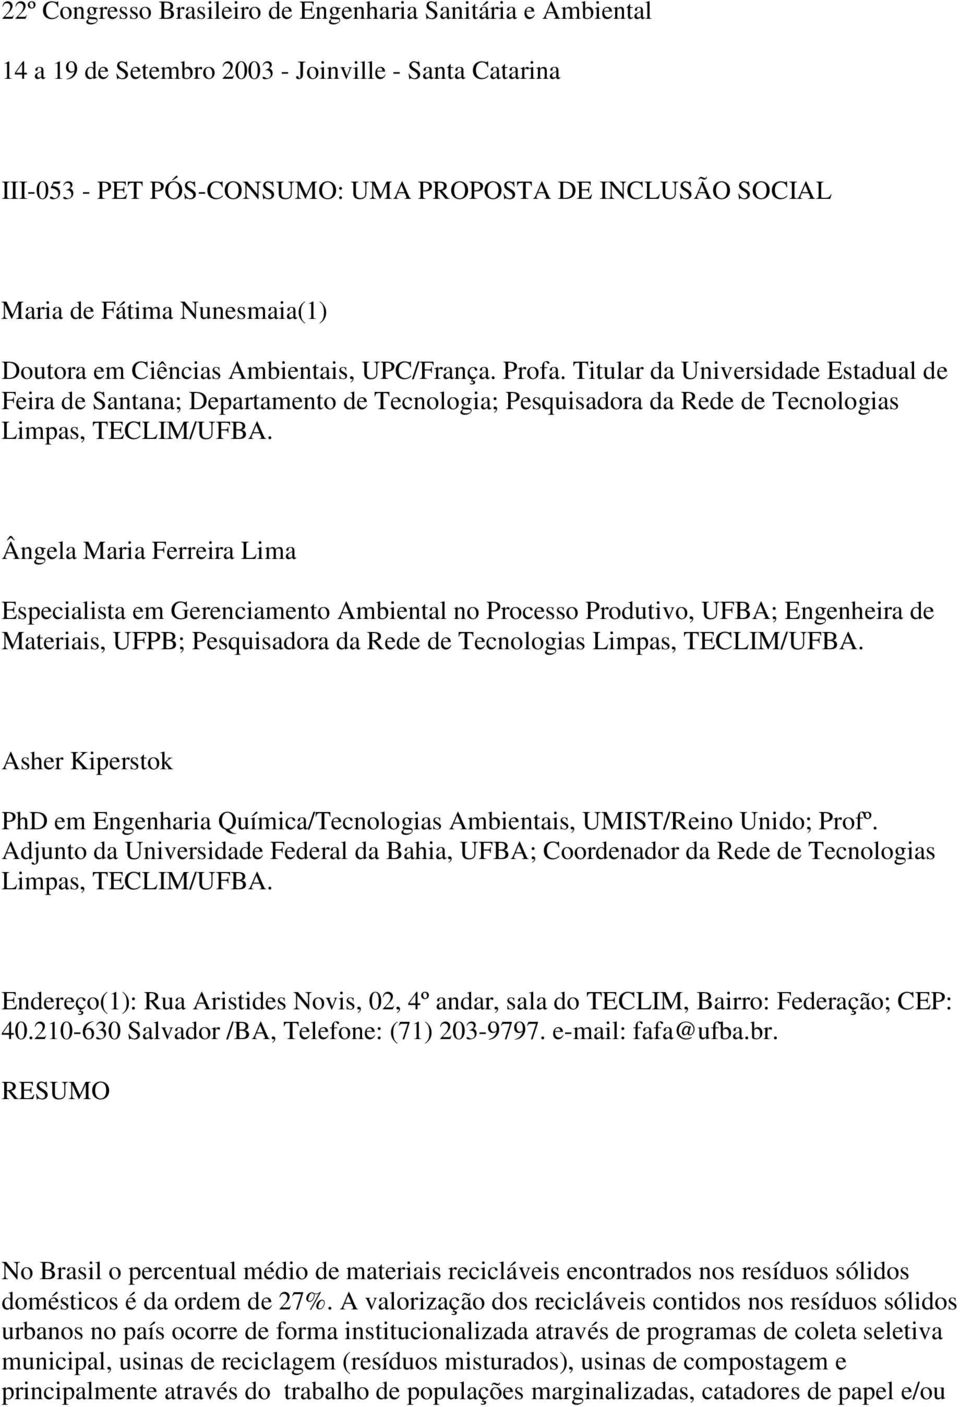 Titular da Universidade Estadual de Feira de Santana; Departamento de Tecnologia; Pesquisadora da Rede de Tecnologias Limpas, TECLIM/UFBA.